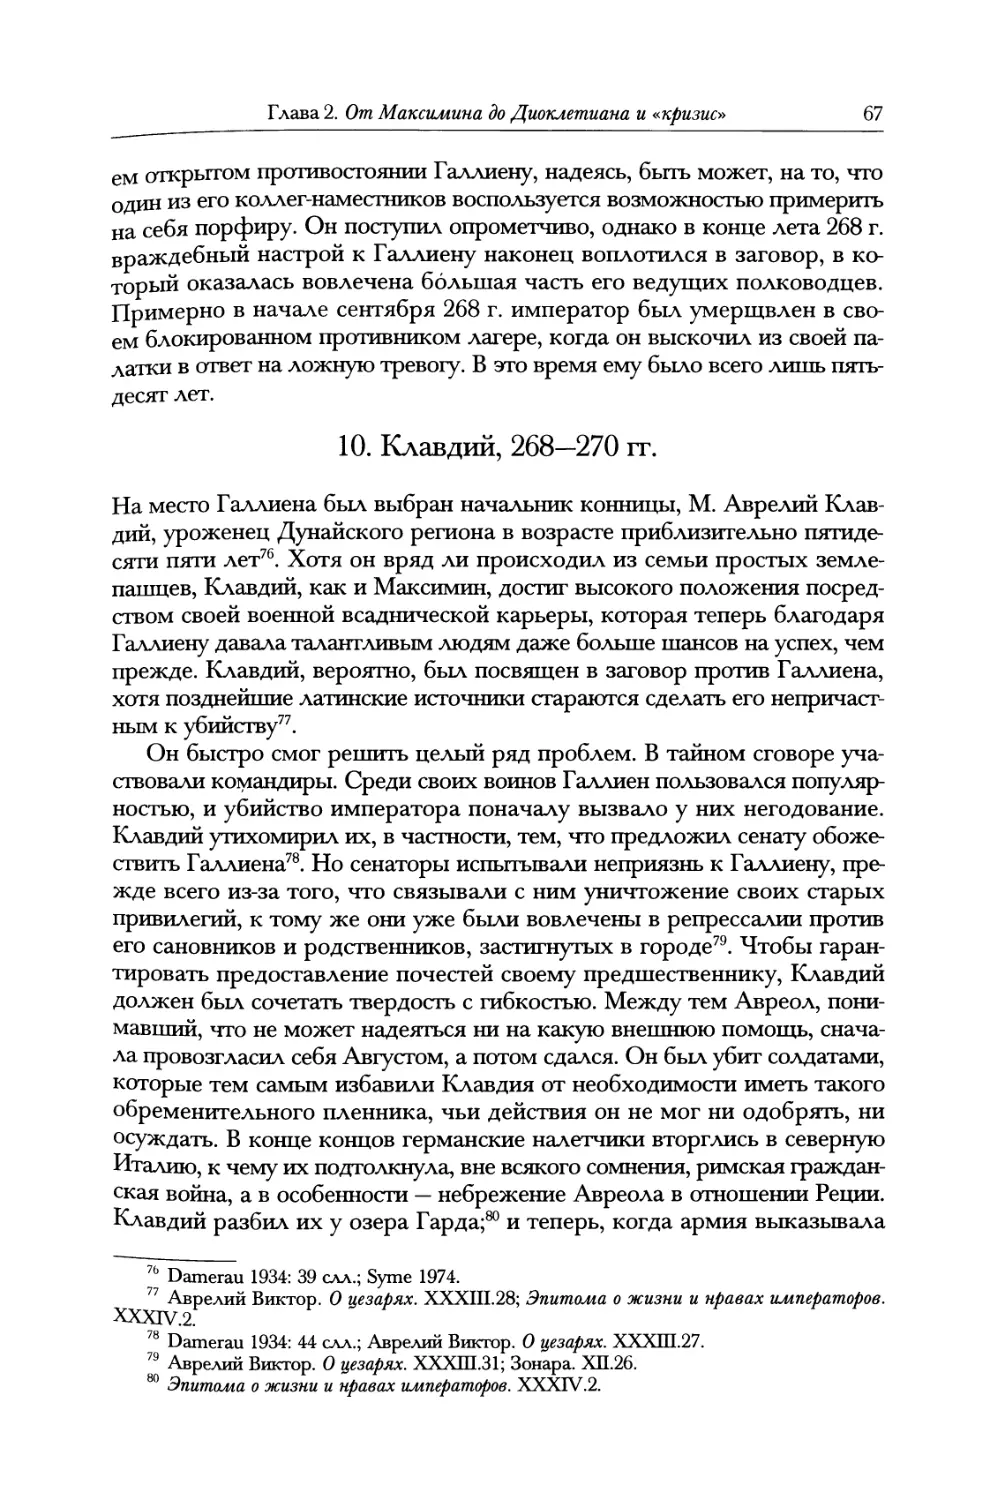 10. Клавдий, 268—270 гг.